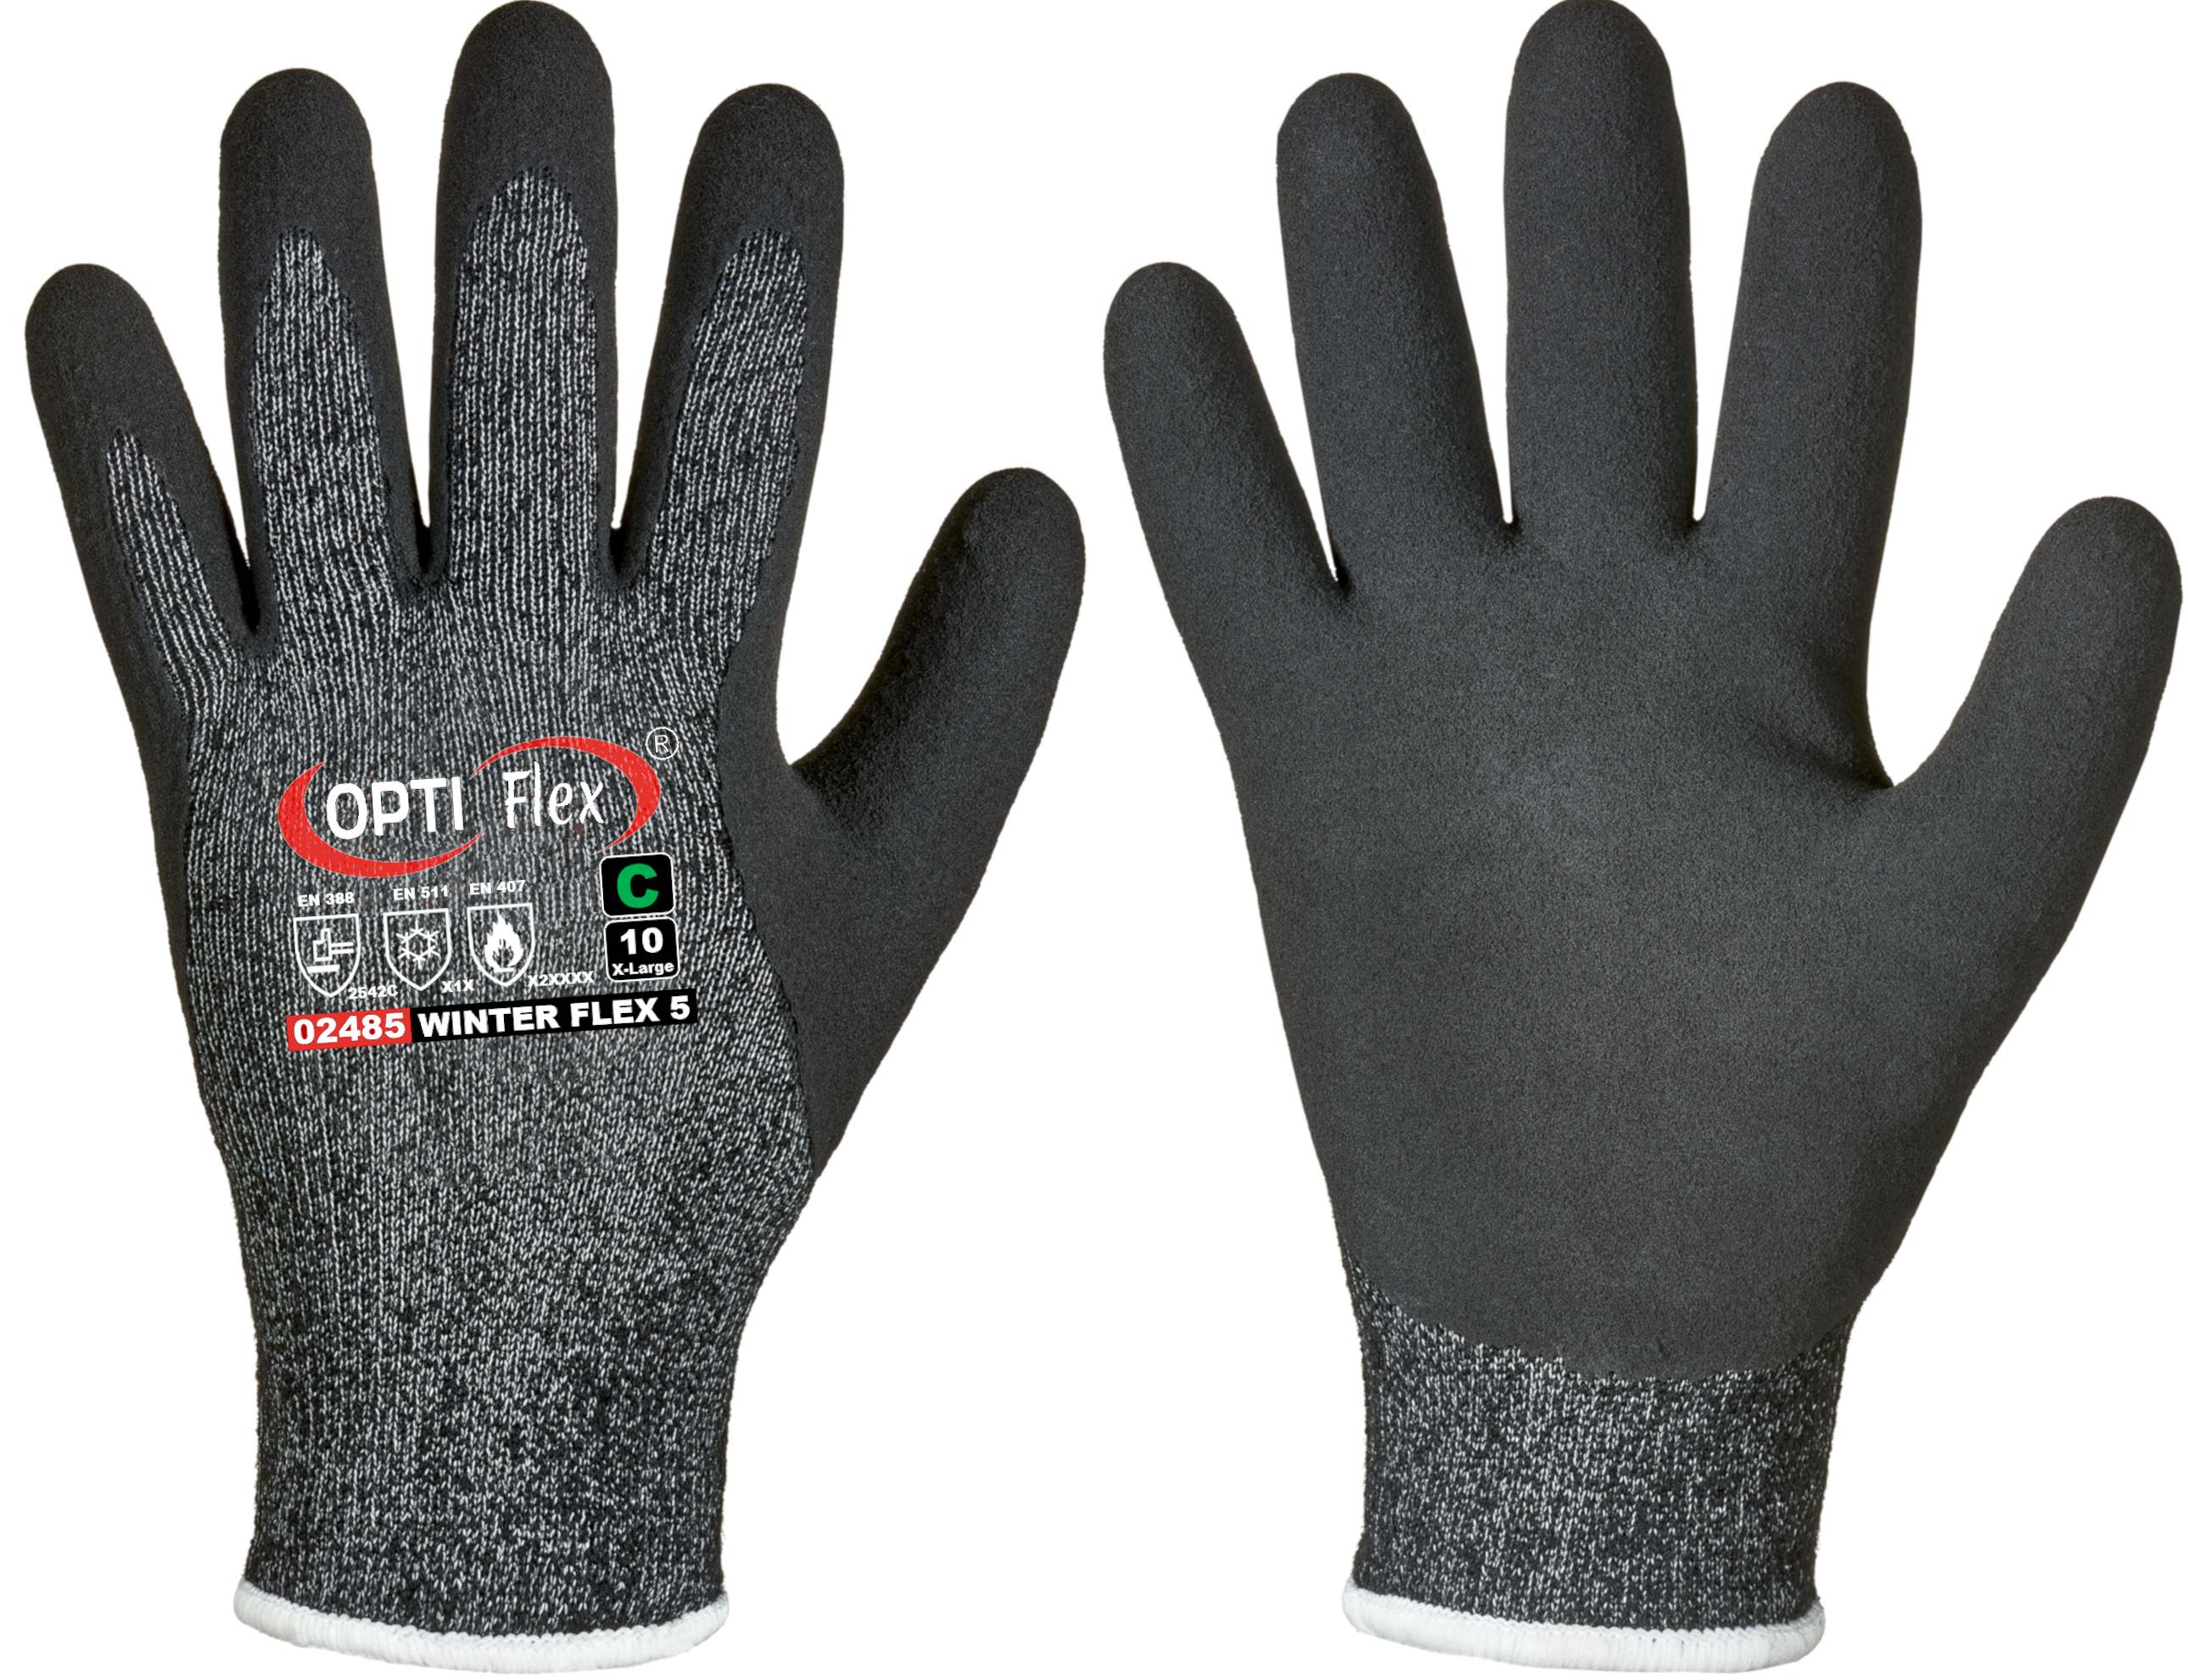 Feldtmann Handschuh Winter Flex 5 schwarz meliert